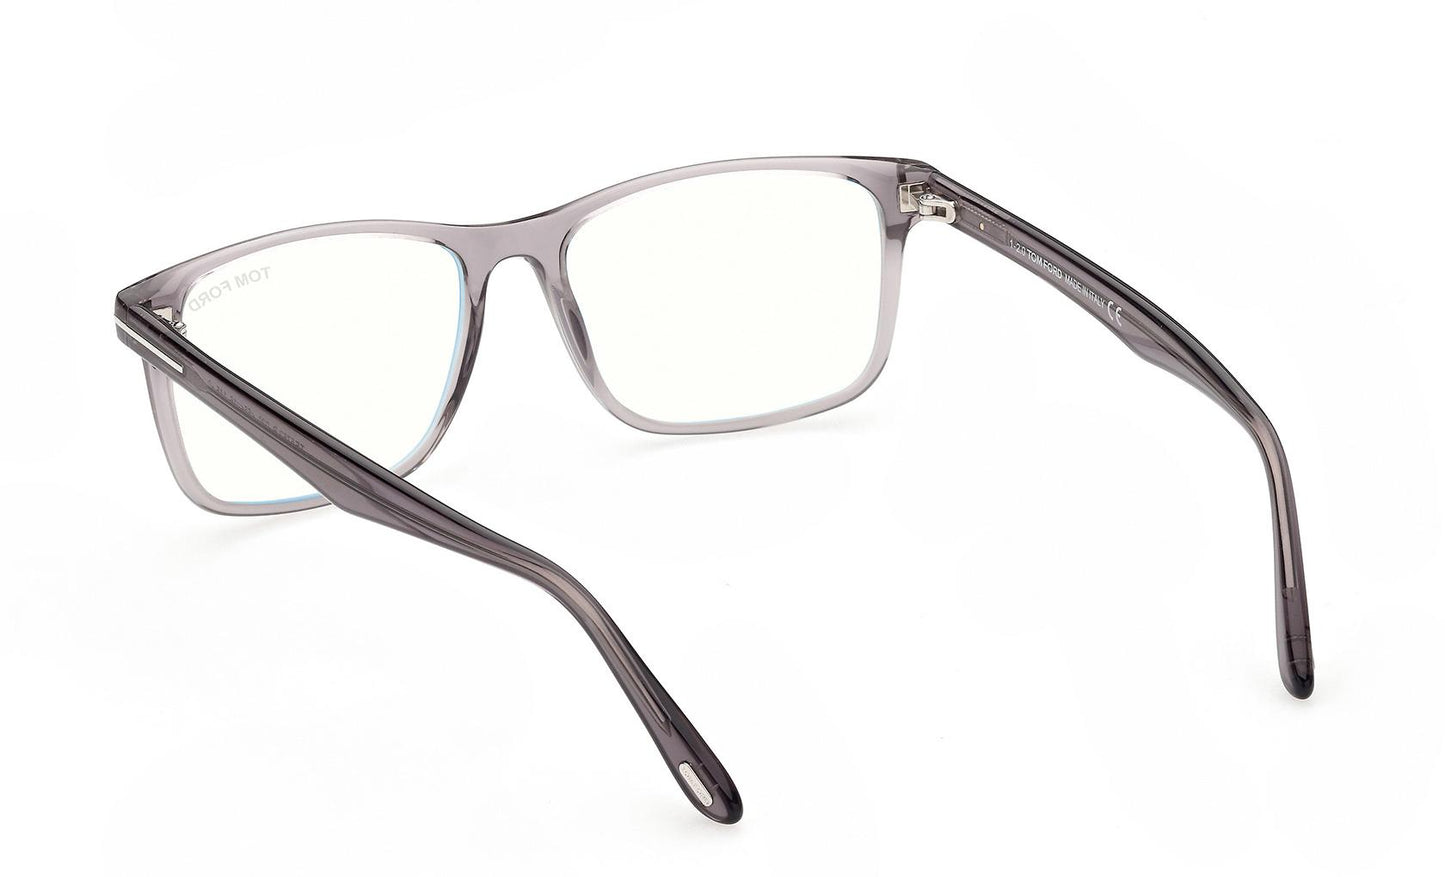 Tom Ford Eyeglasses FT5752/B 020